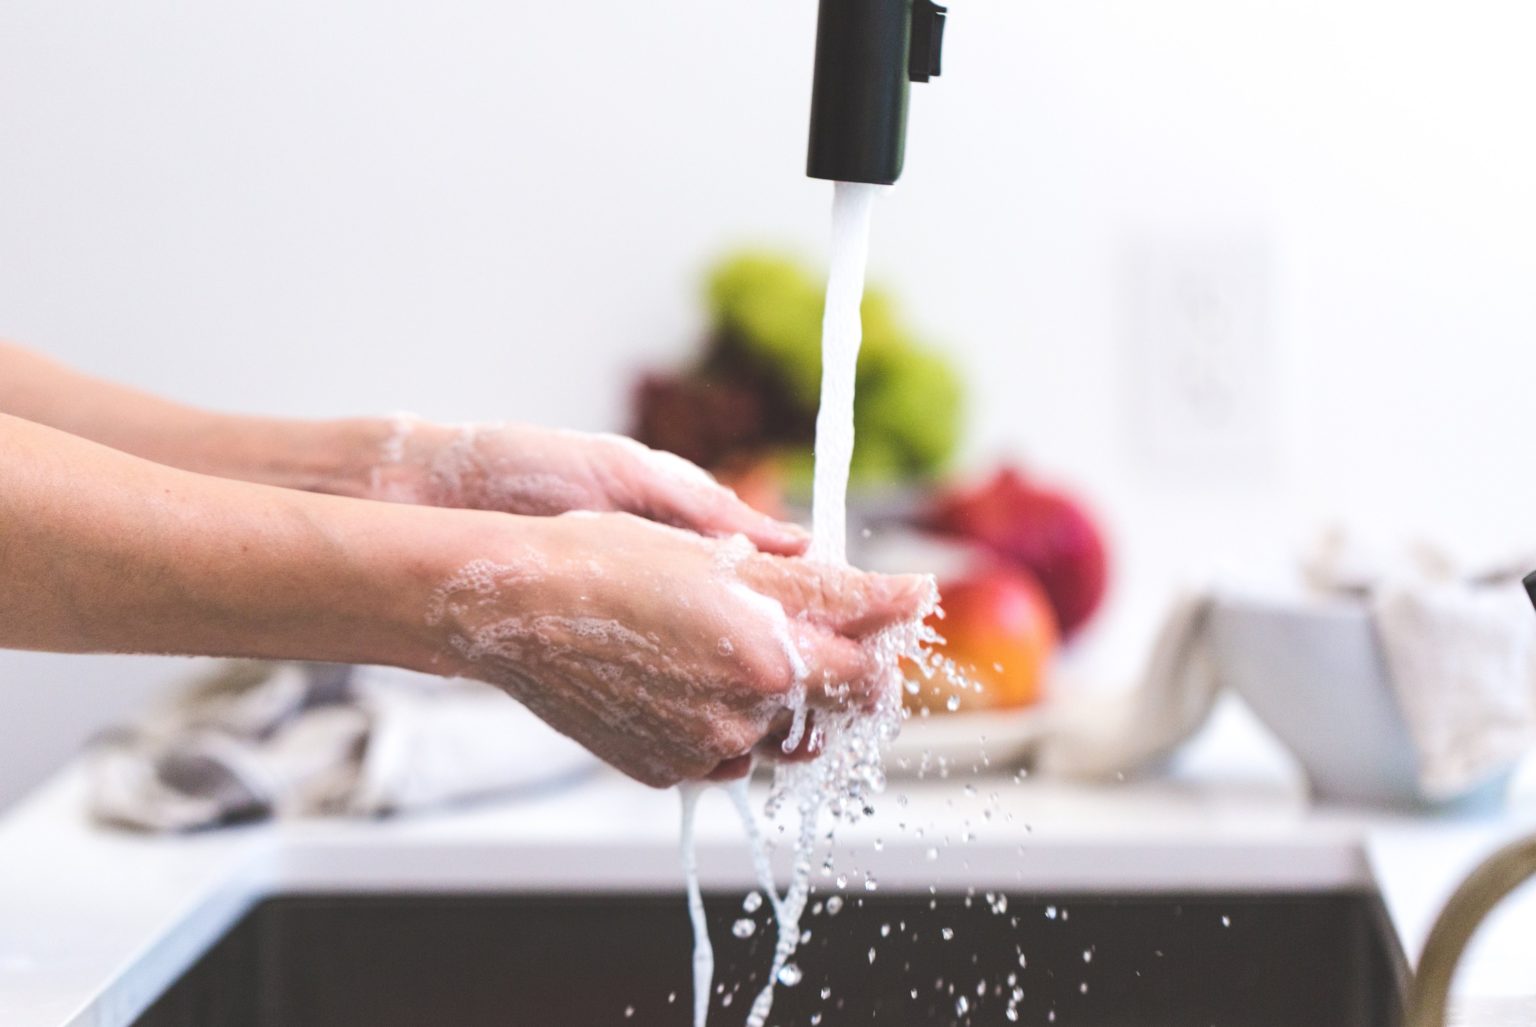 Tangan Kering karena Sering Cuci Tangan? Cari Tahu Solusinya di Sini